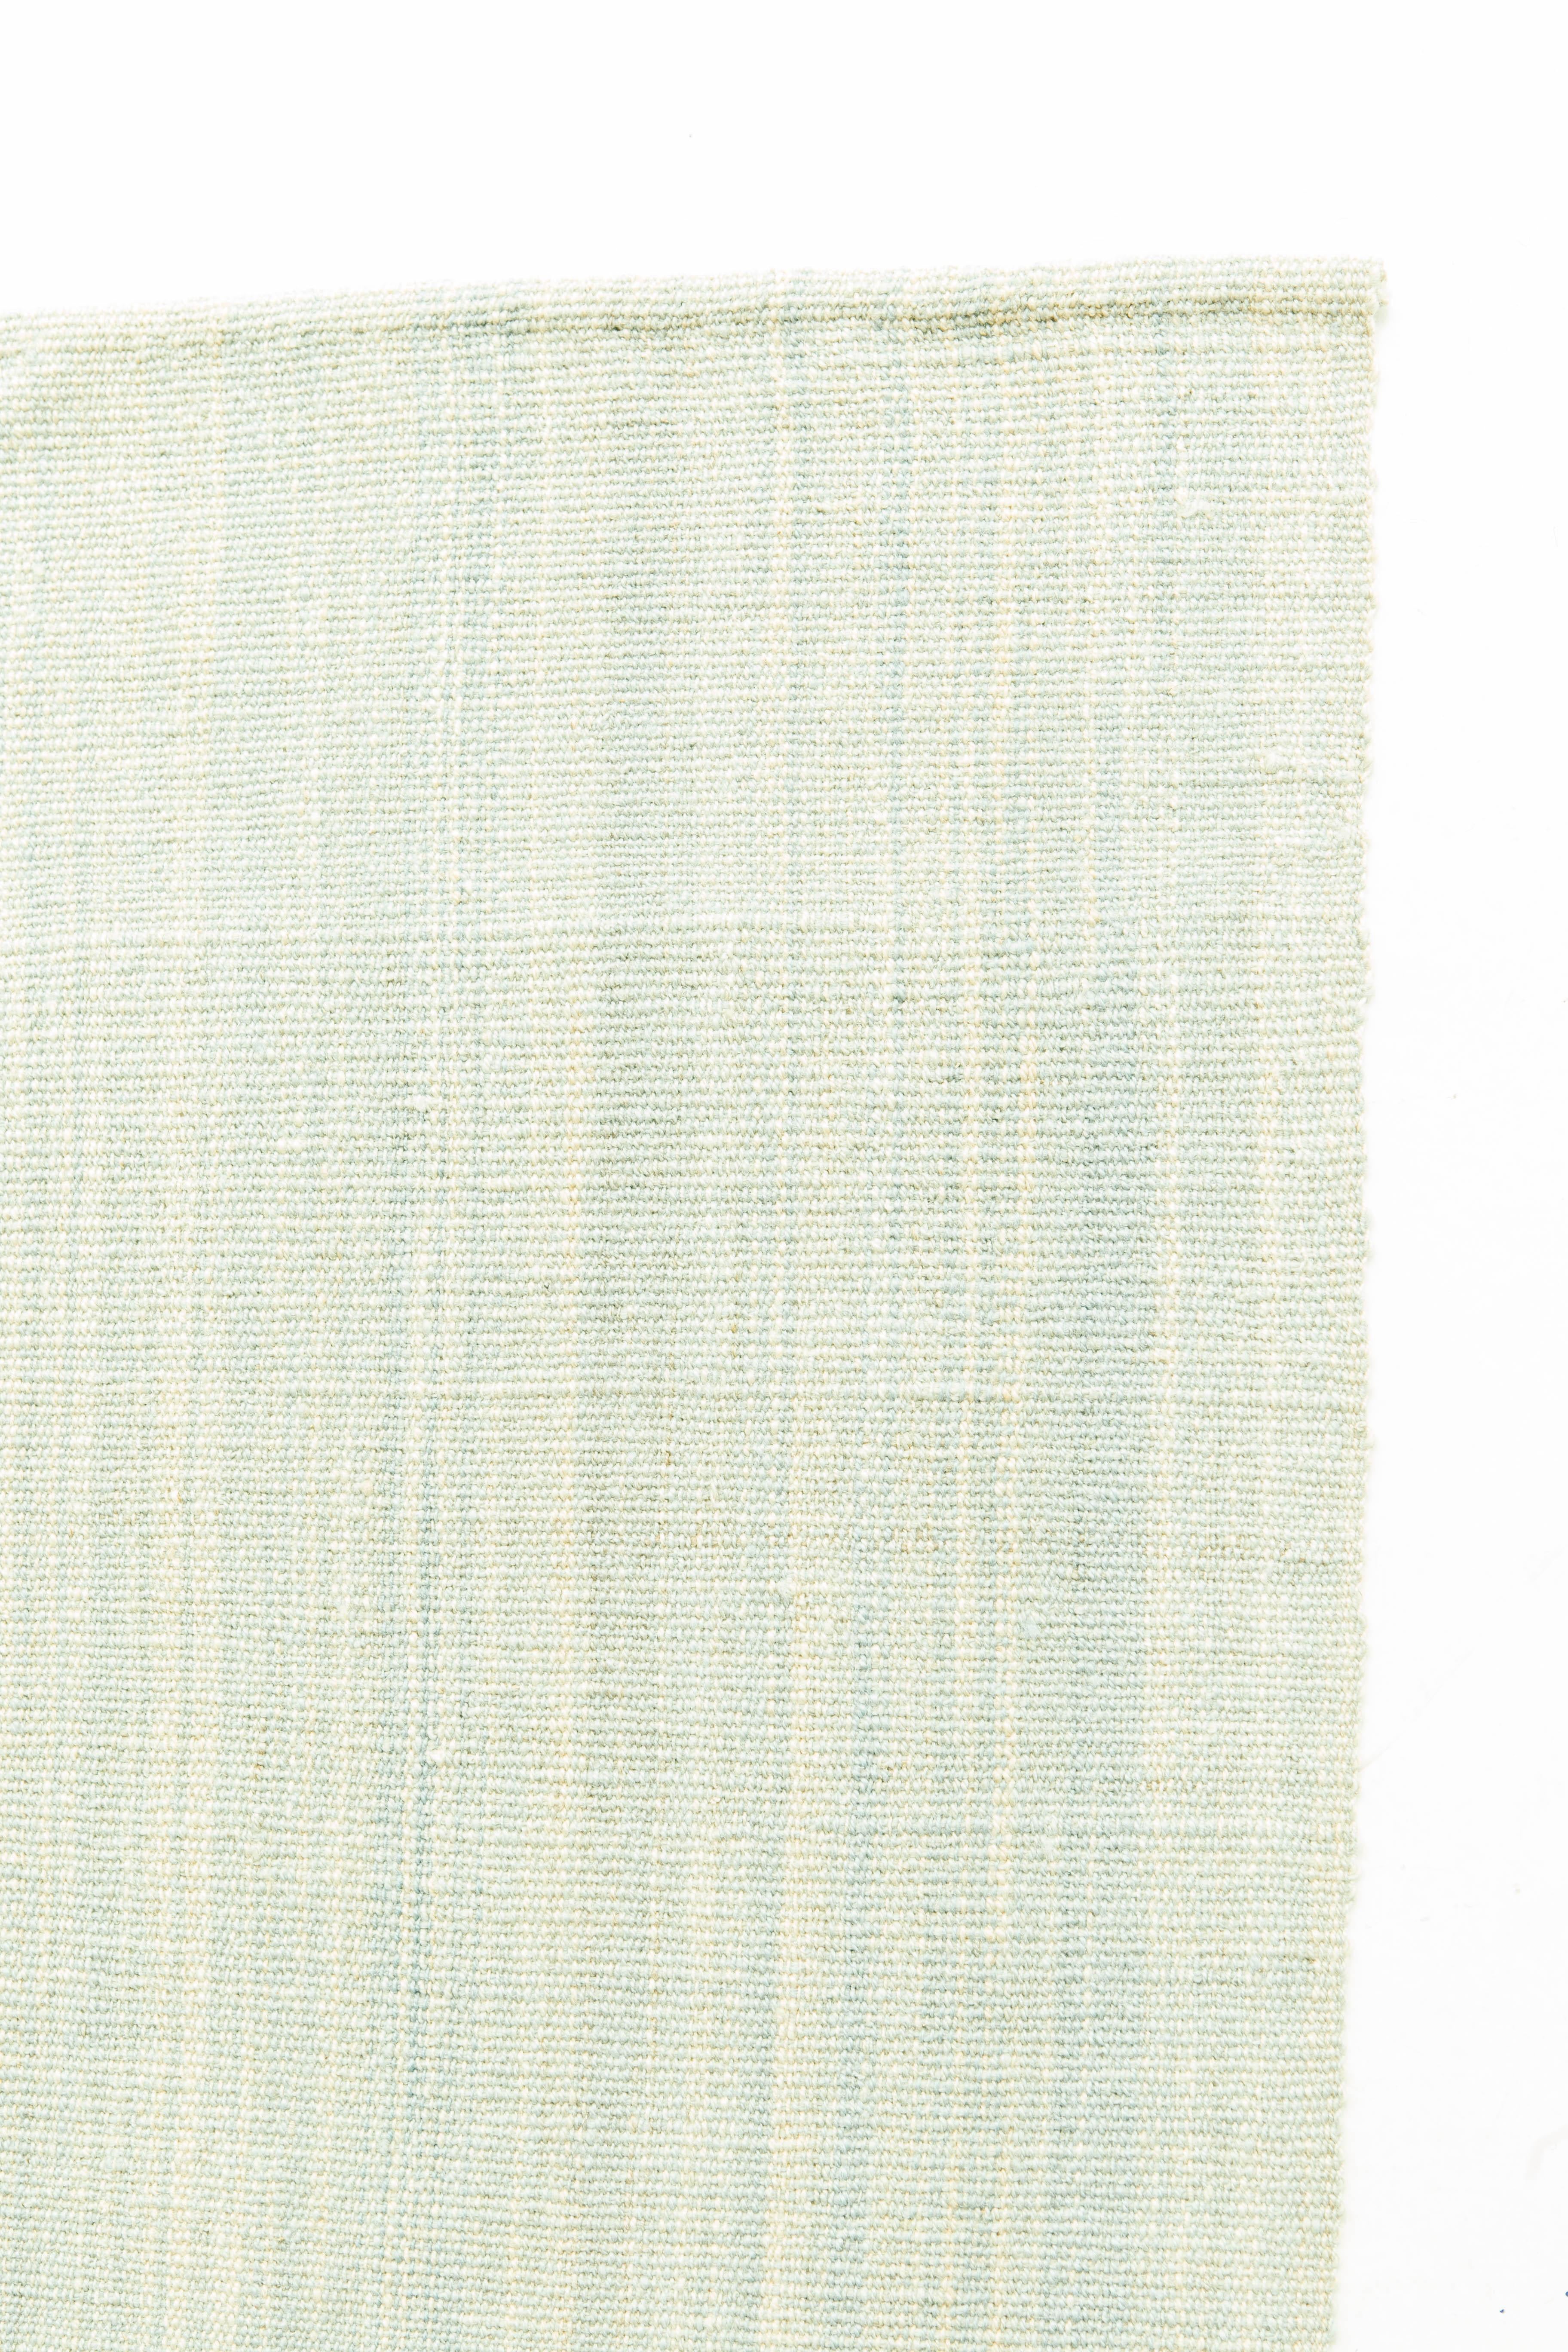 Ce tapis persan Edel Kilim à tissage plat est élégant et sans effort dans ses douces couleurs vertes et bleues. Avec des transitions douces et un design simpliste, il allie luxe et praticité.

Numéro de tapis : 26244
Taille : 8'3